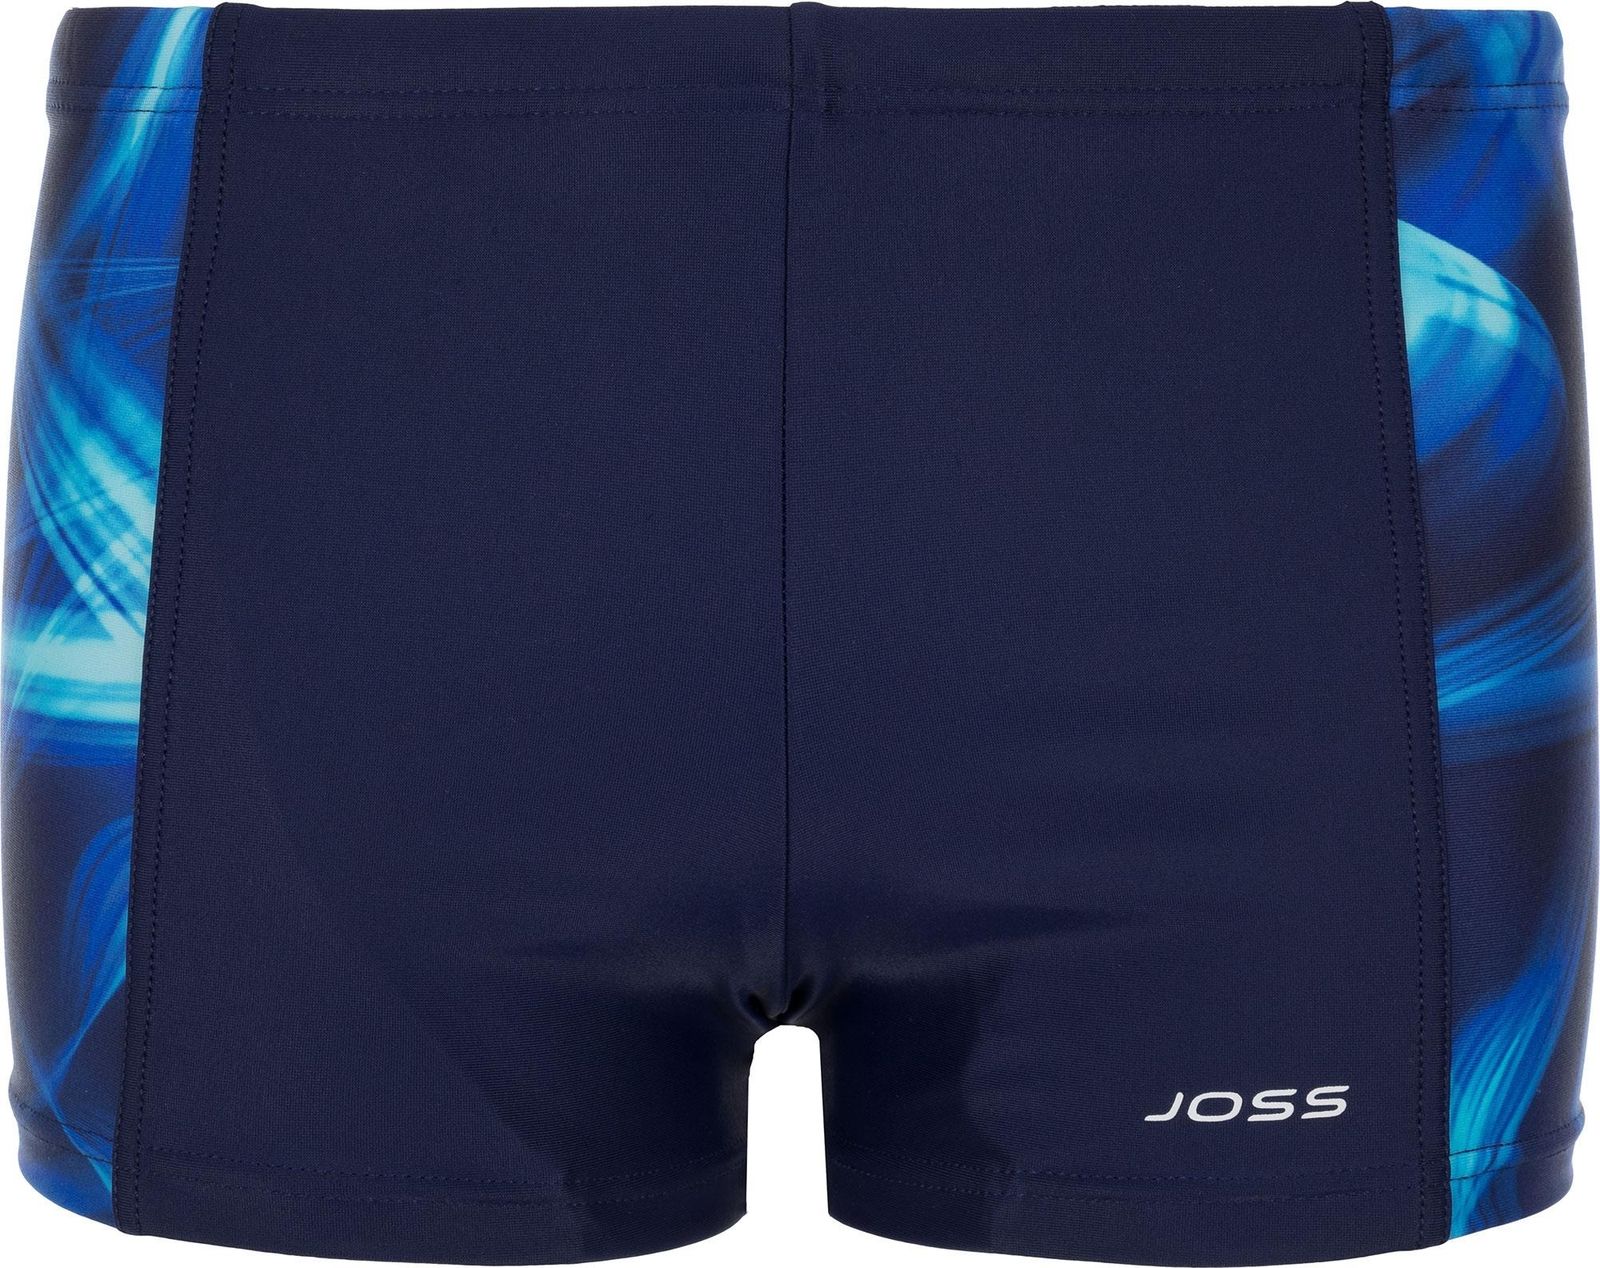    Joss Boys' Swim Trunks, : , . BSX04S6-MQ.  152